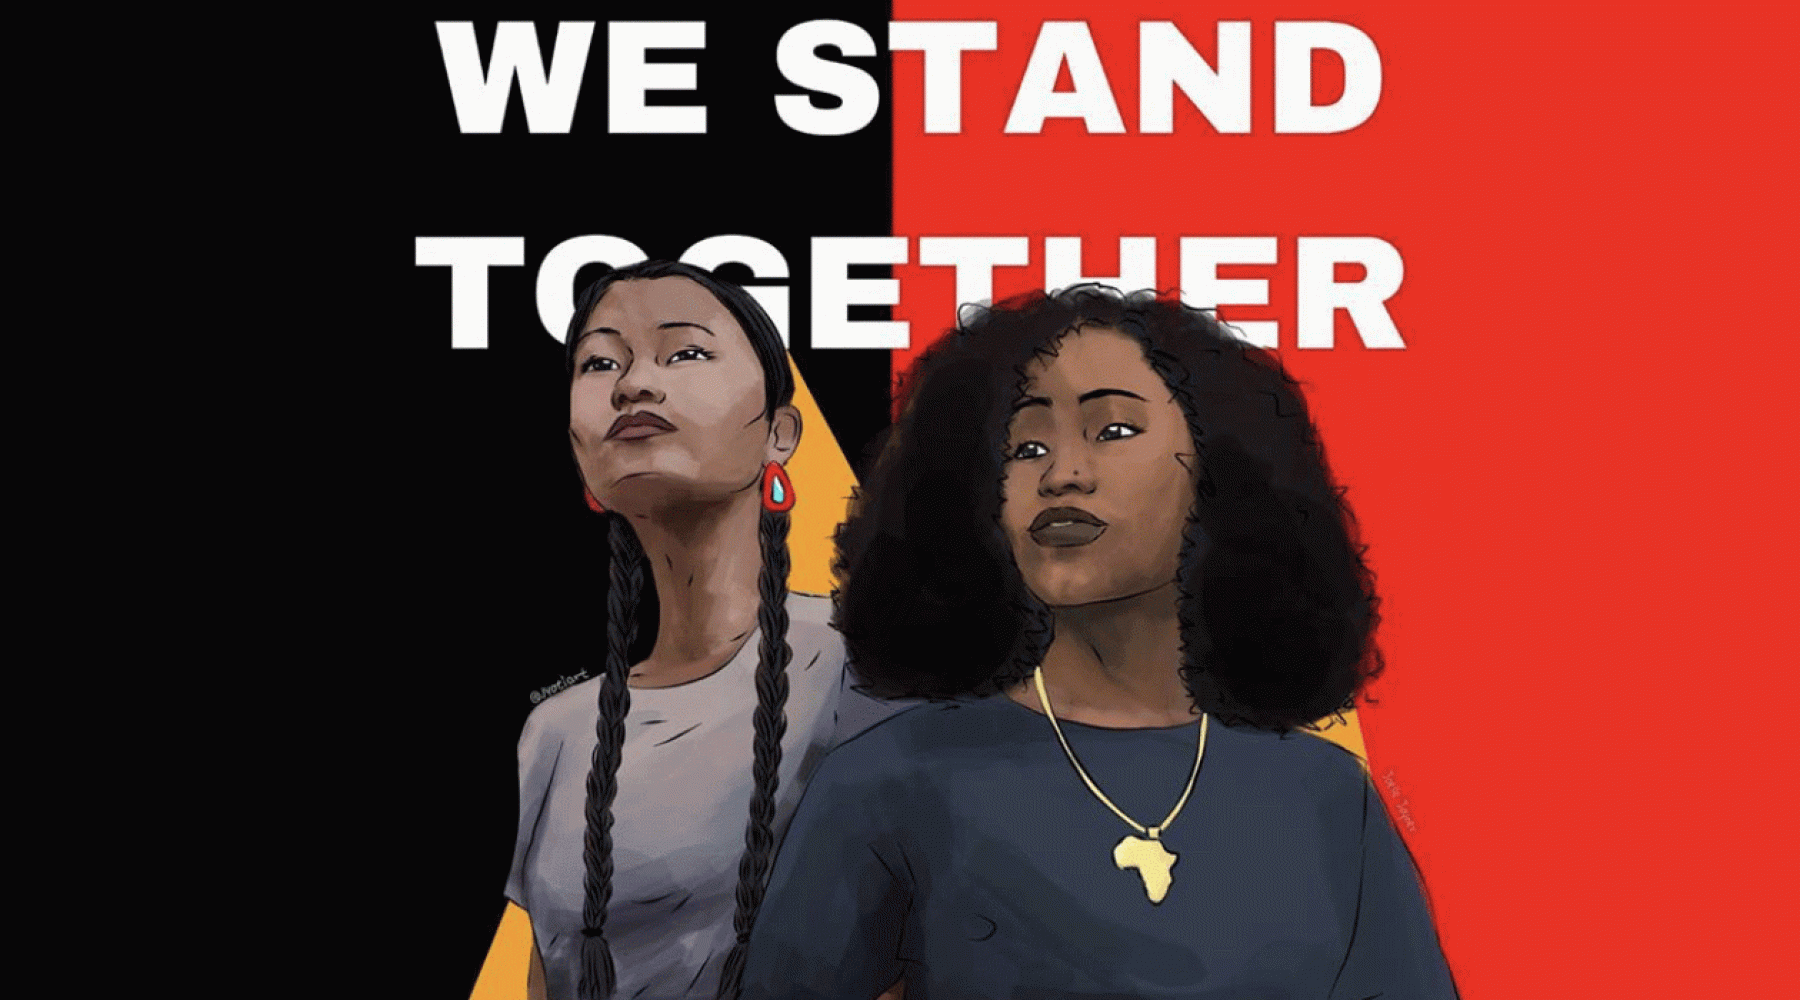 "We Stand Together" artwork